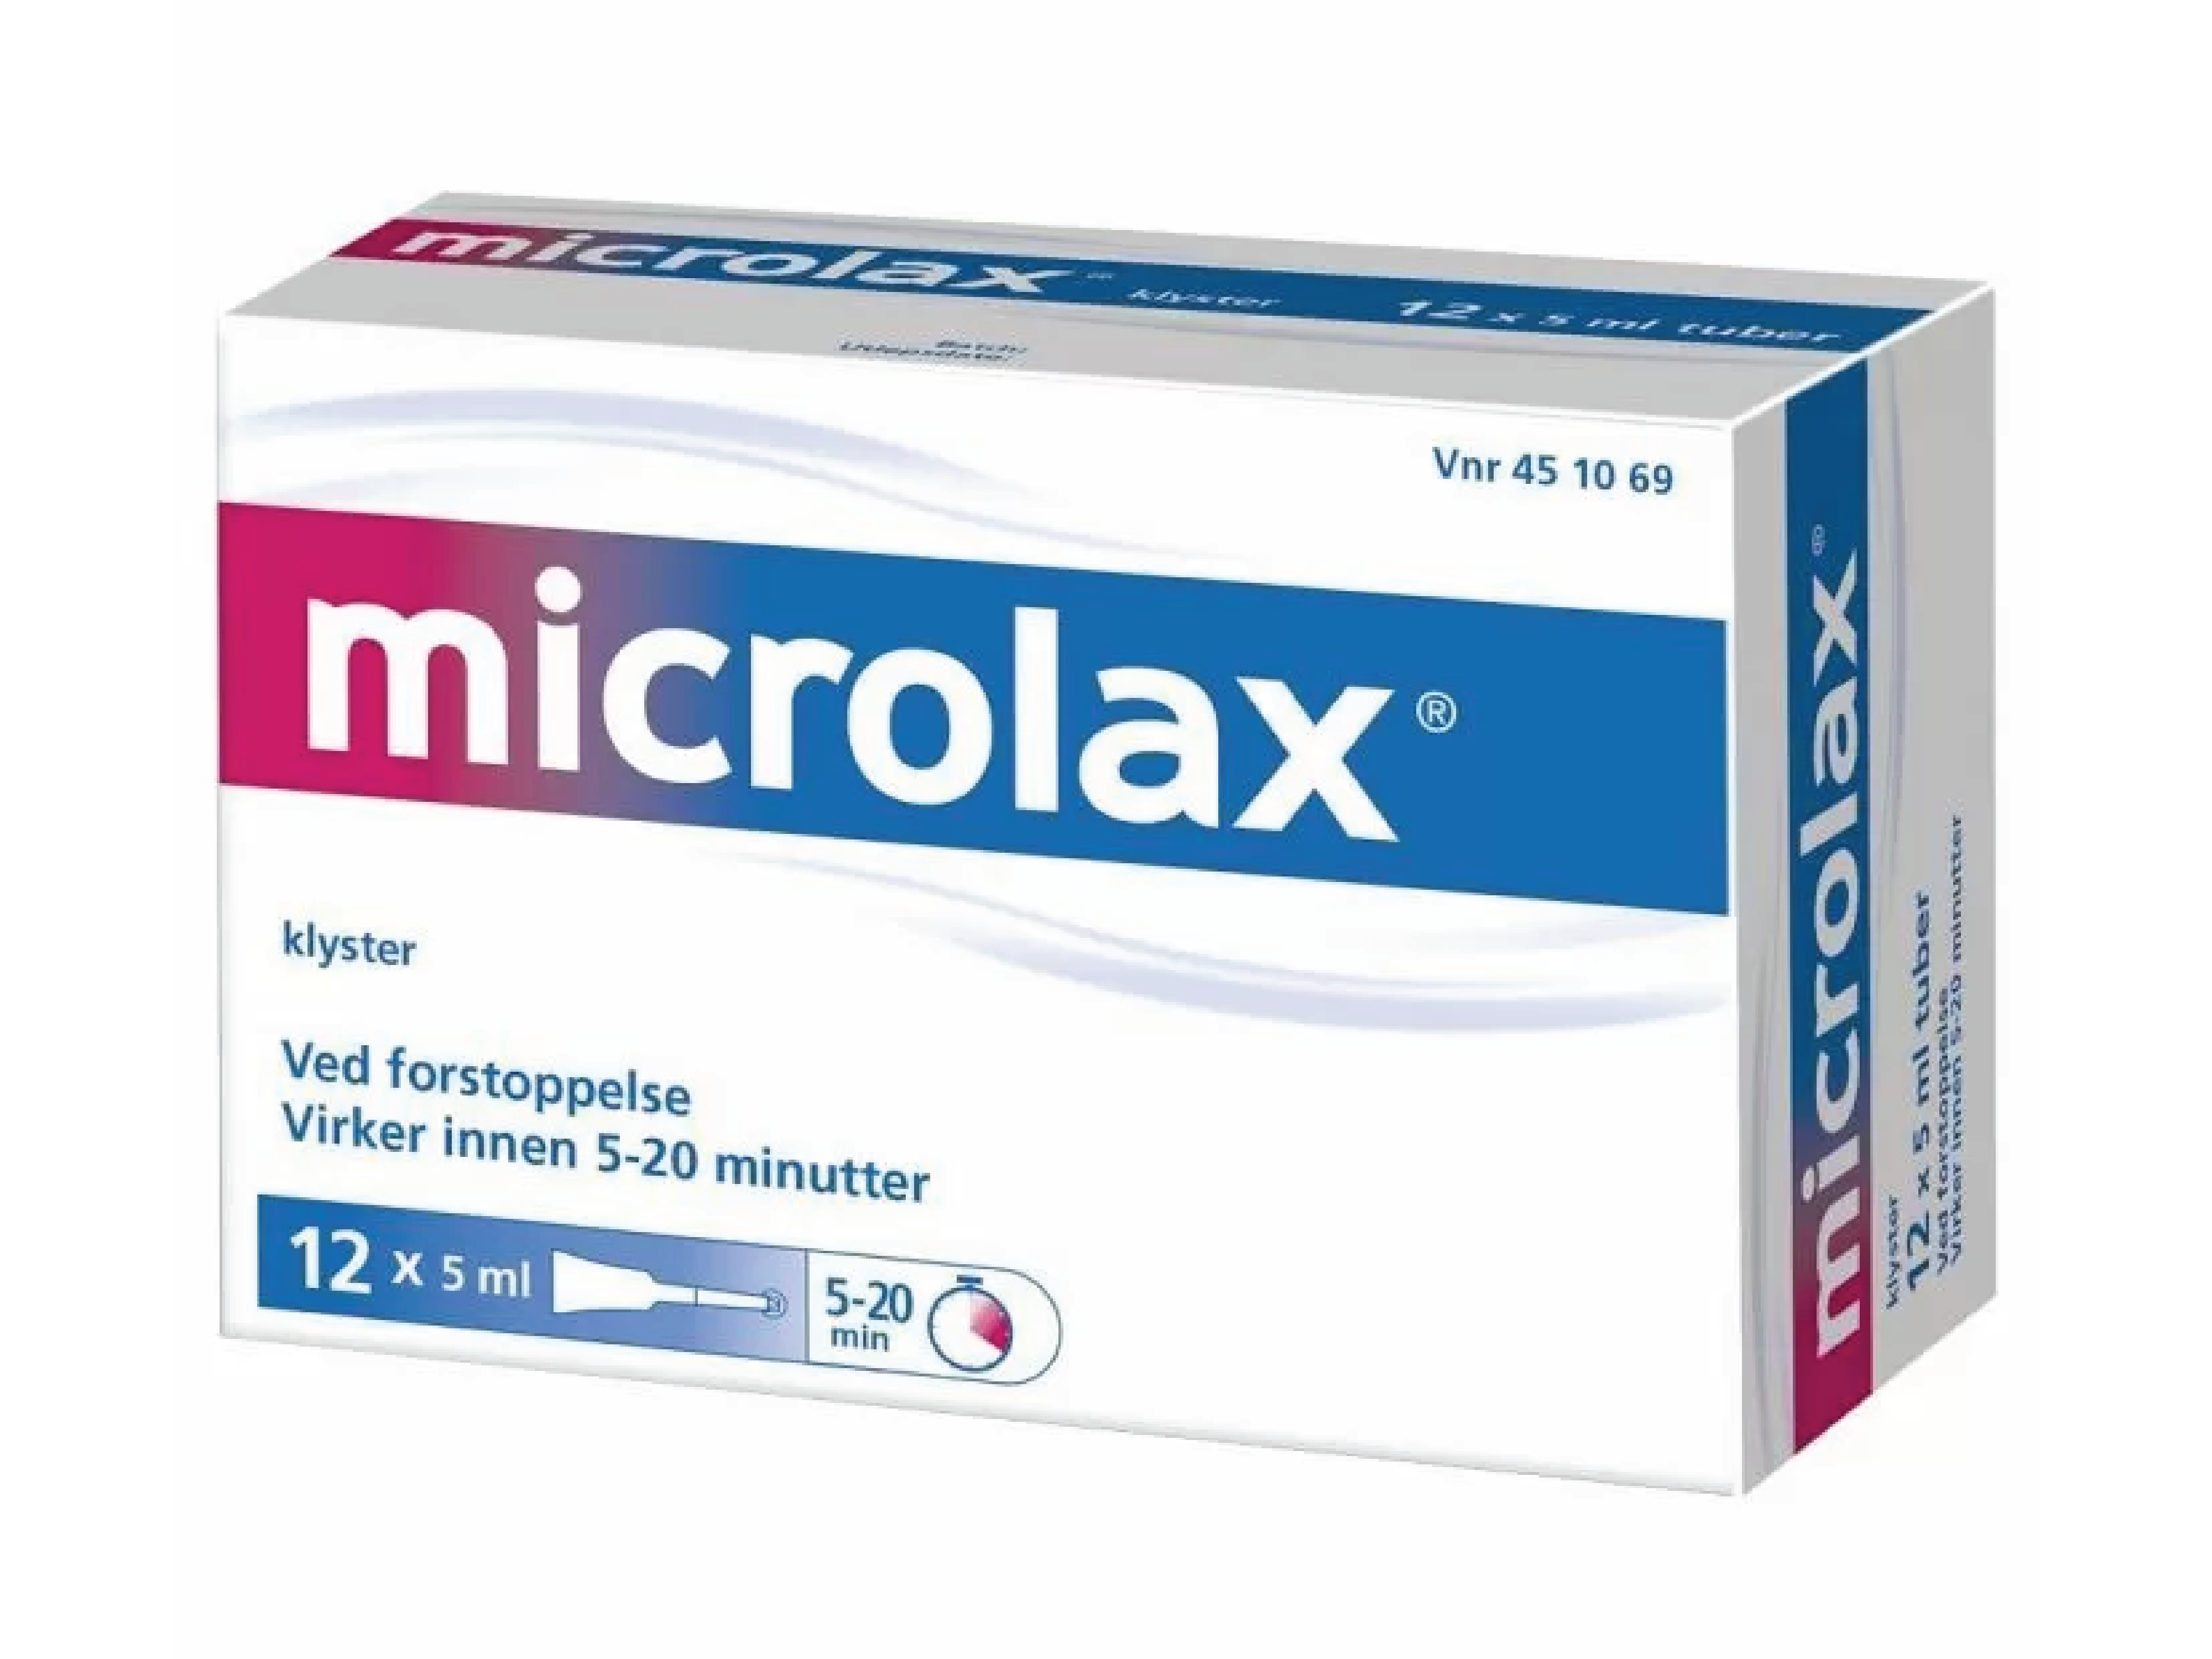 Microlax Rektalvæske (klyster), 12 x 5 ml.